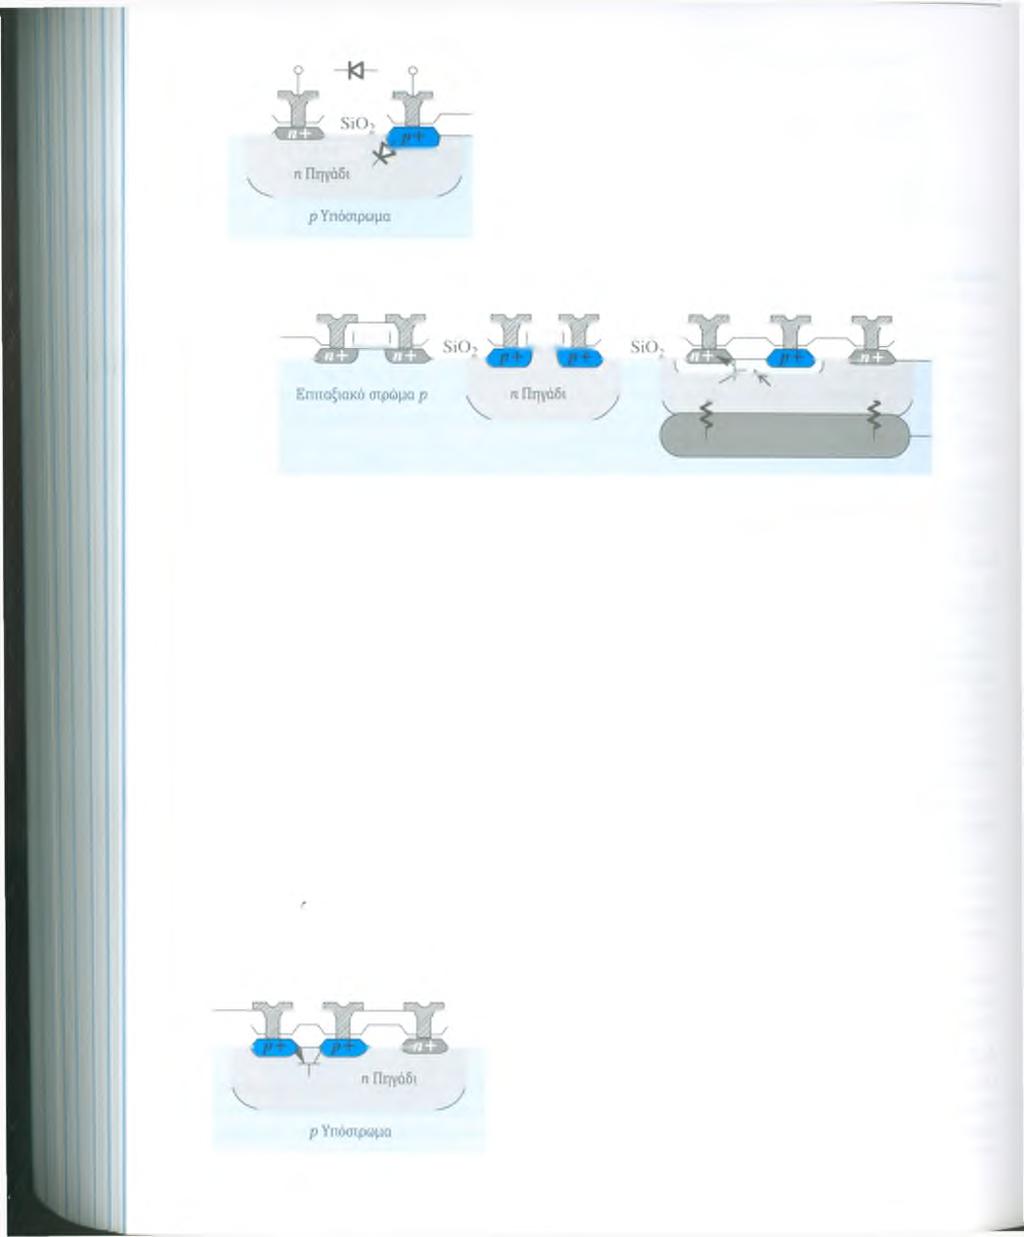 Δίοδος ένωοης ρη ΣΧΗΜΑ Α.7 Δίοδος ένωσης ρη που παράγεται με κατασκευαστική διαδικασία CMOS n-πηγαδιού.